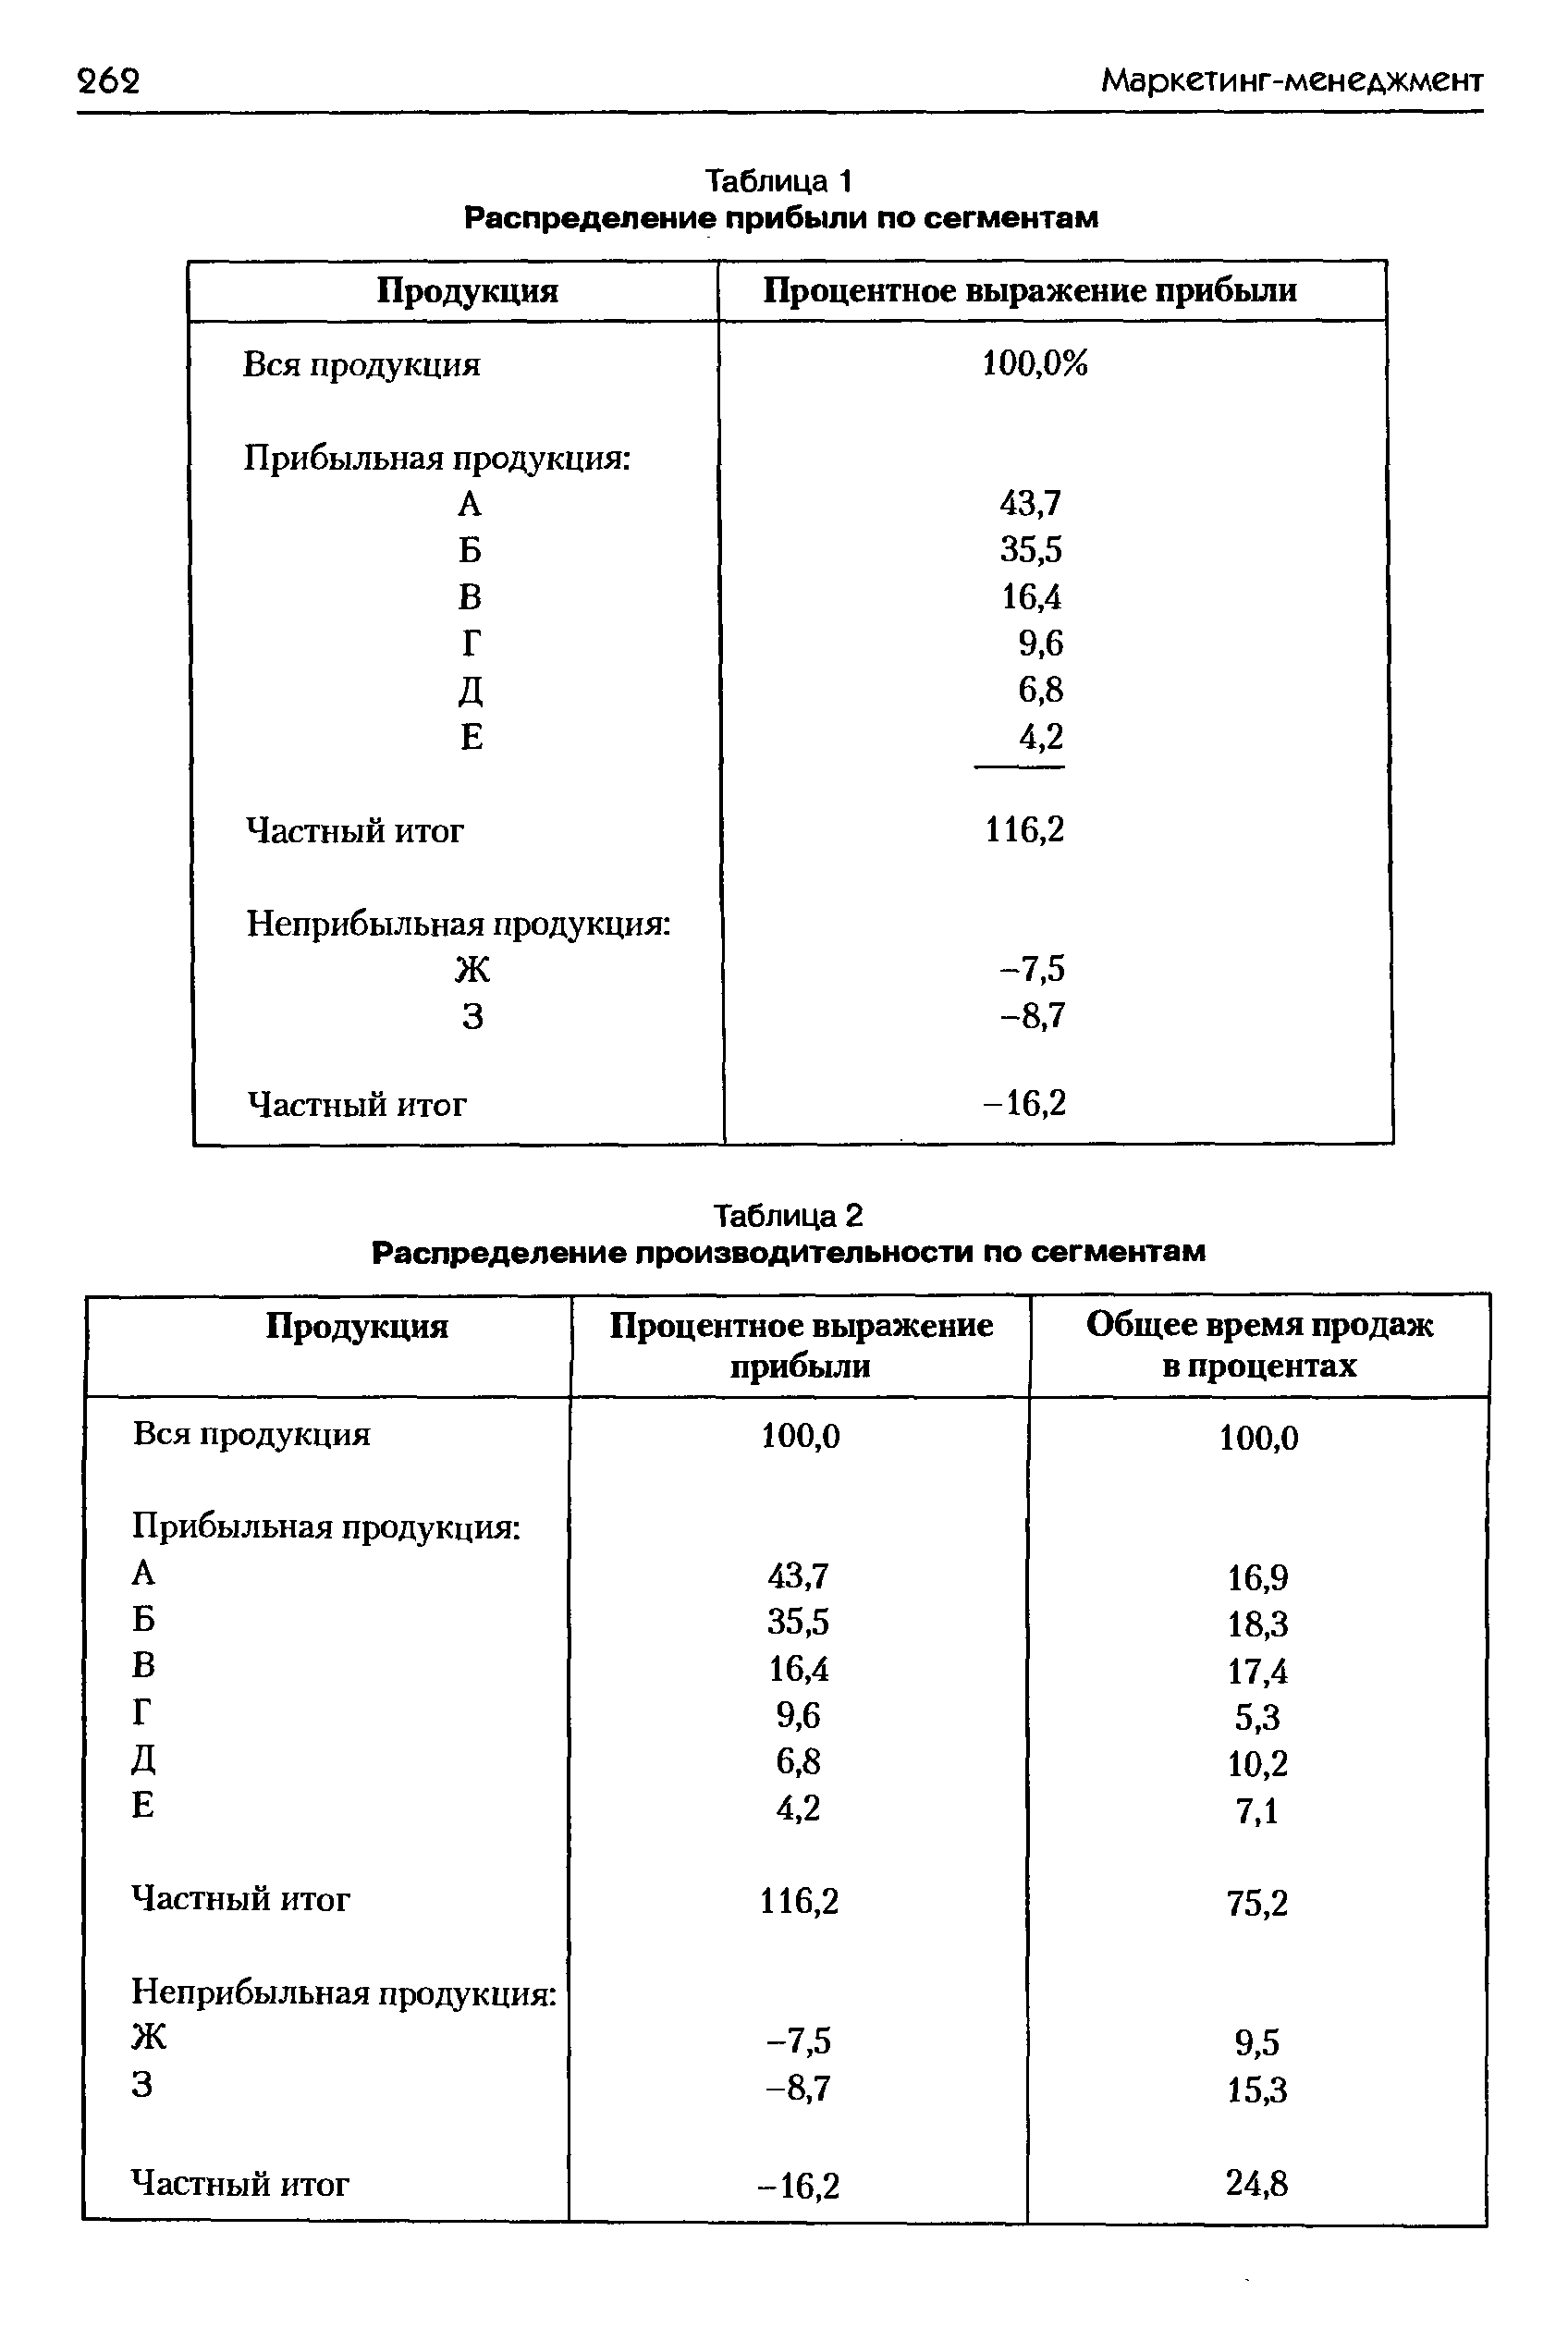 Таблица 2 Распределение производительности по сегментам
